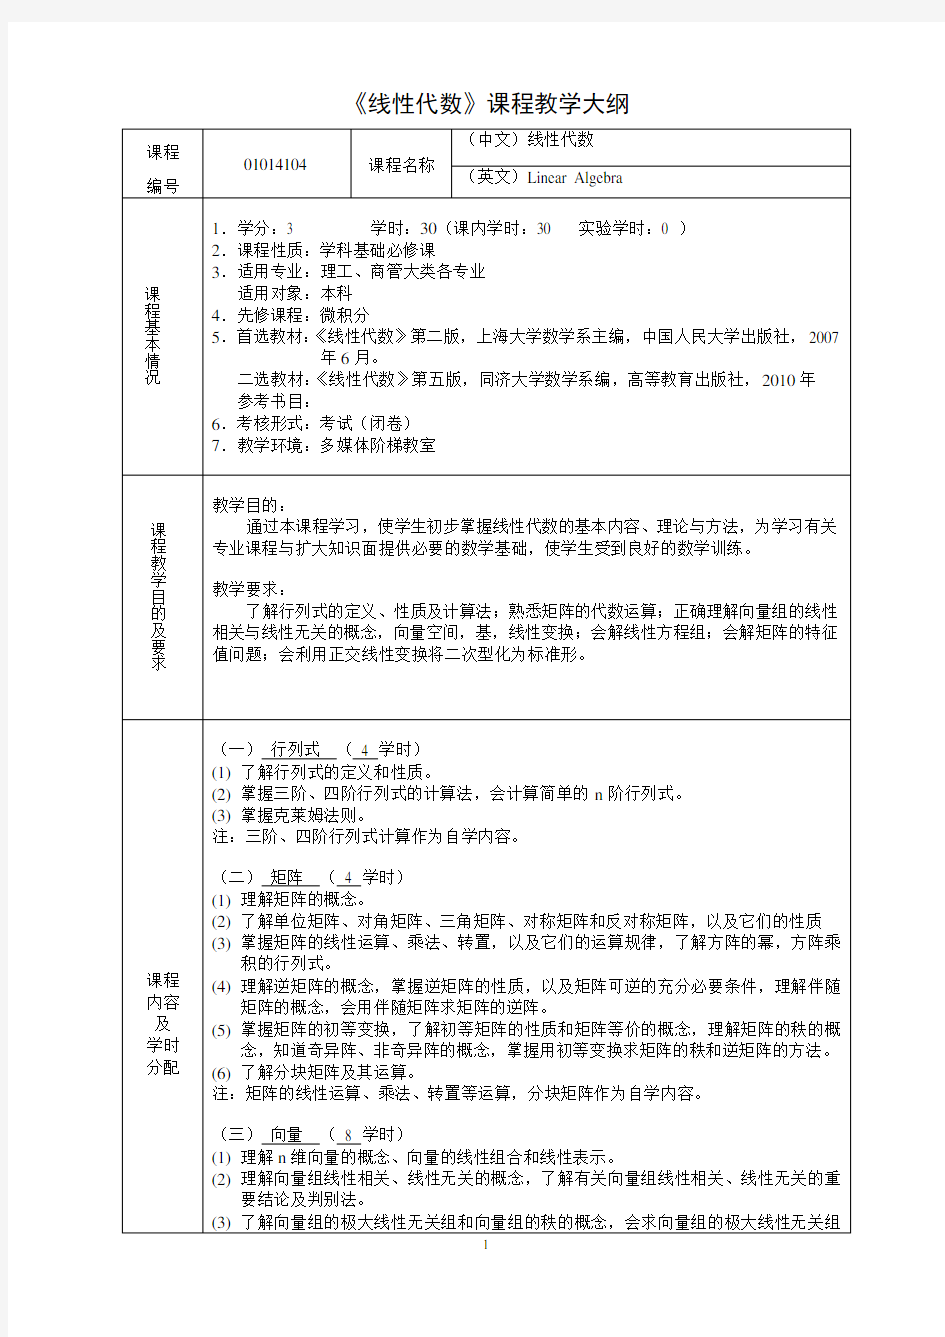 线性代数教学大纲-上海大学数学系